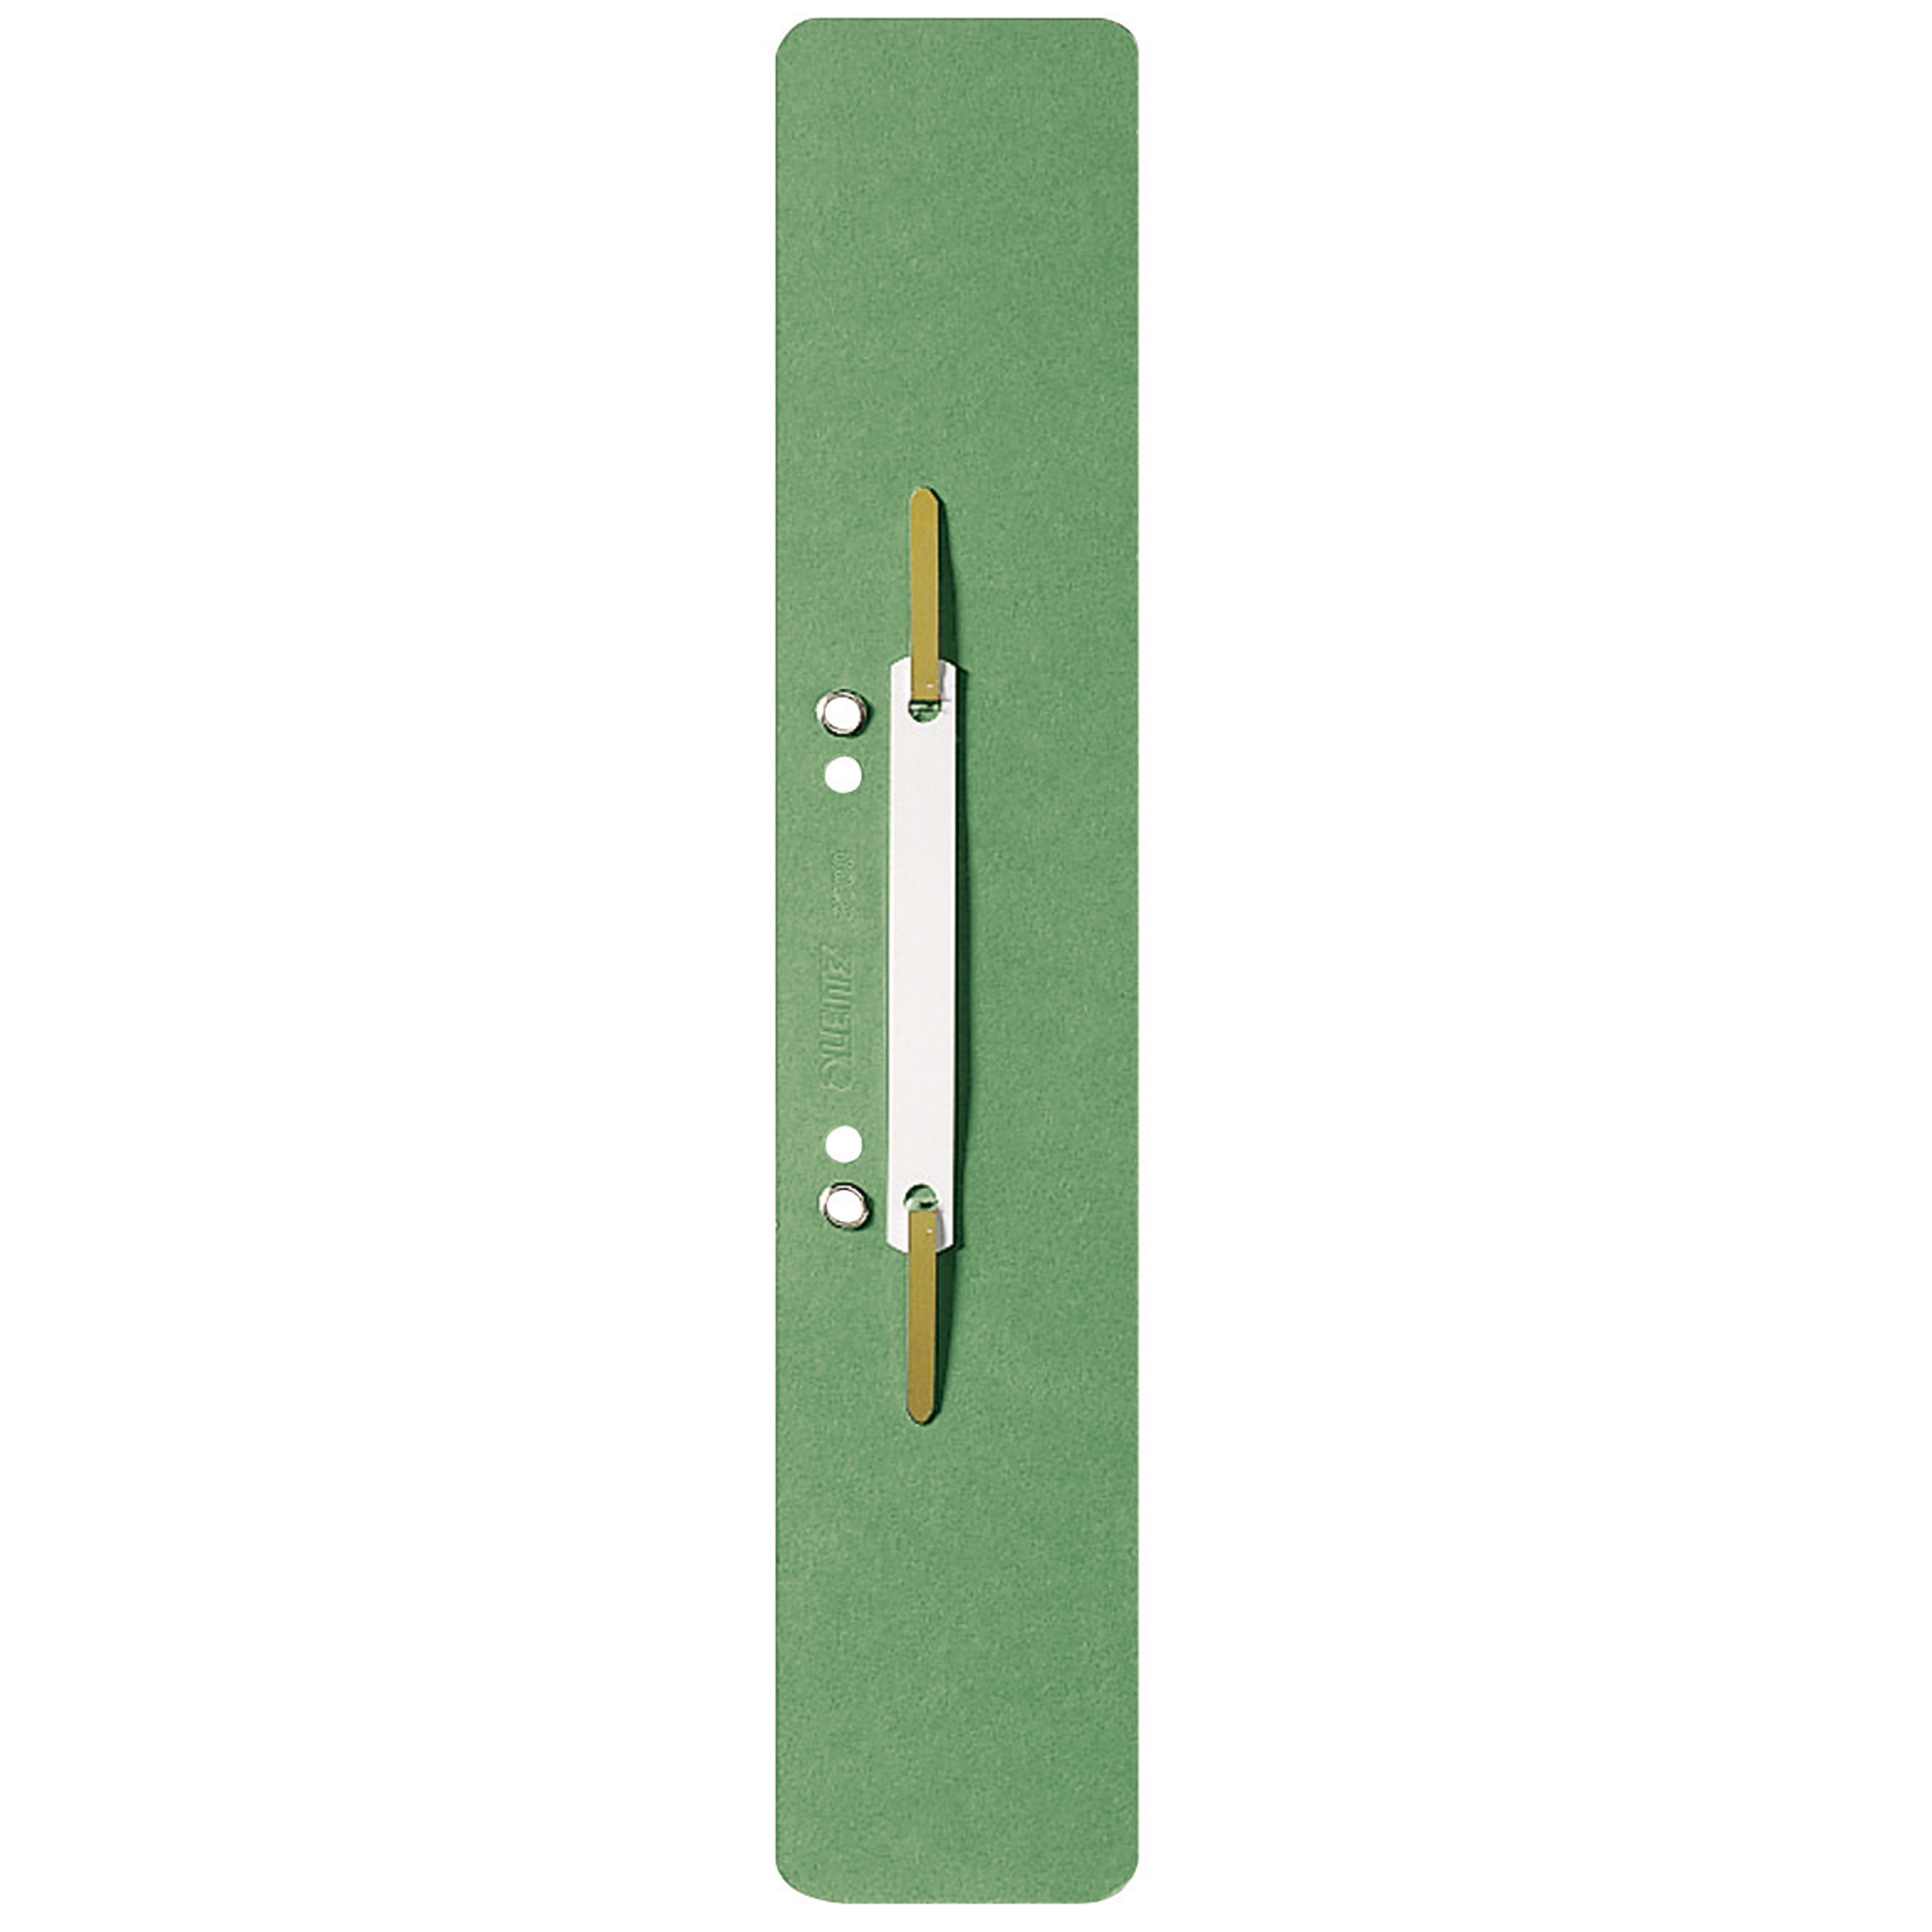 Leitz Einhängeheftstreifen Karton, 6 x 30,5 cm grün